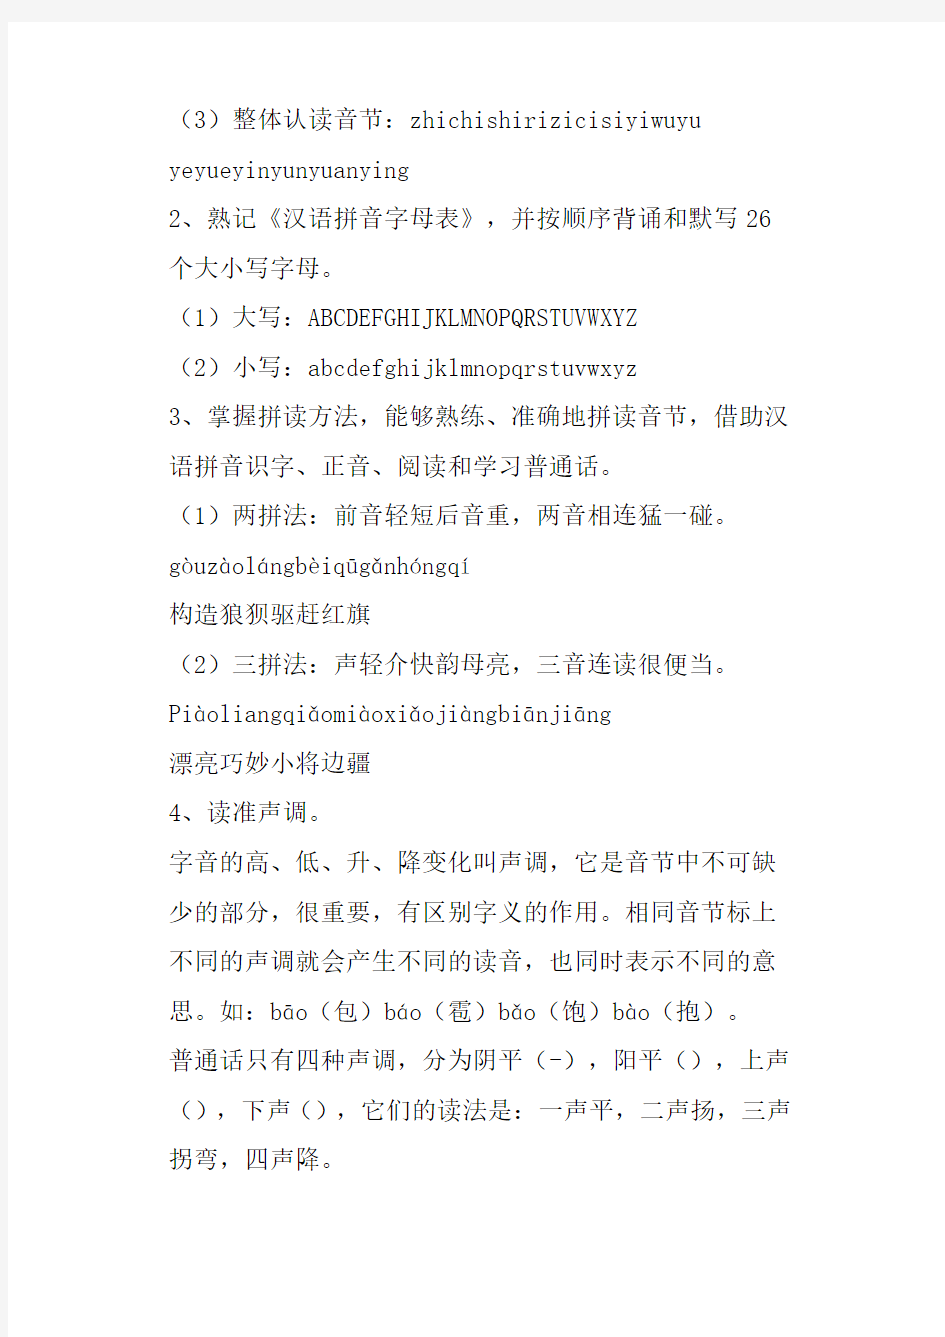 人教版小学语文总复习资料--汉语拼音部分